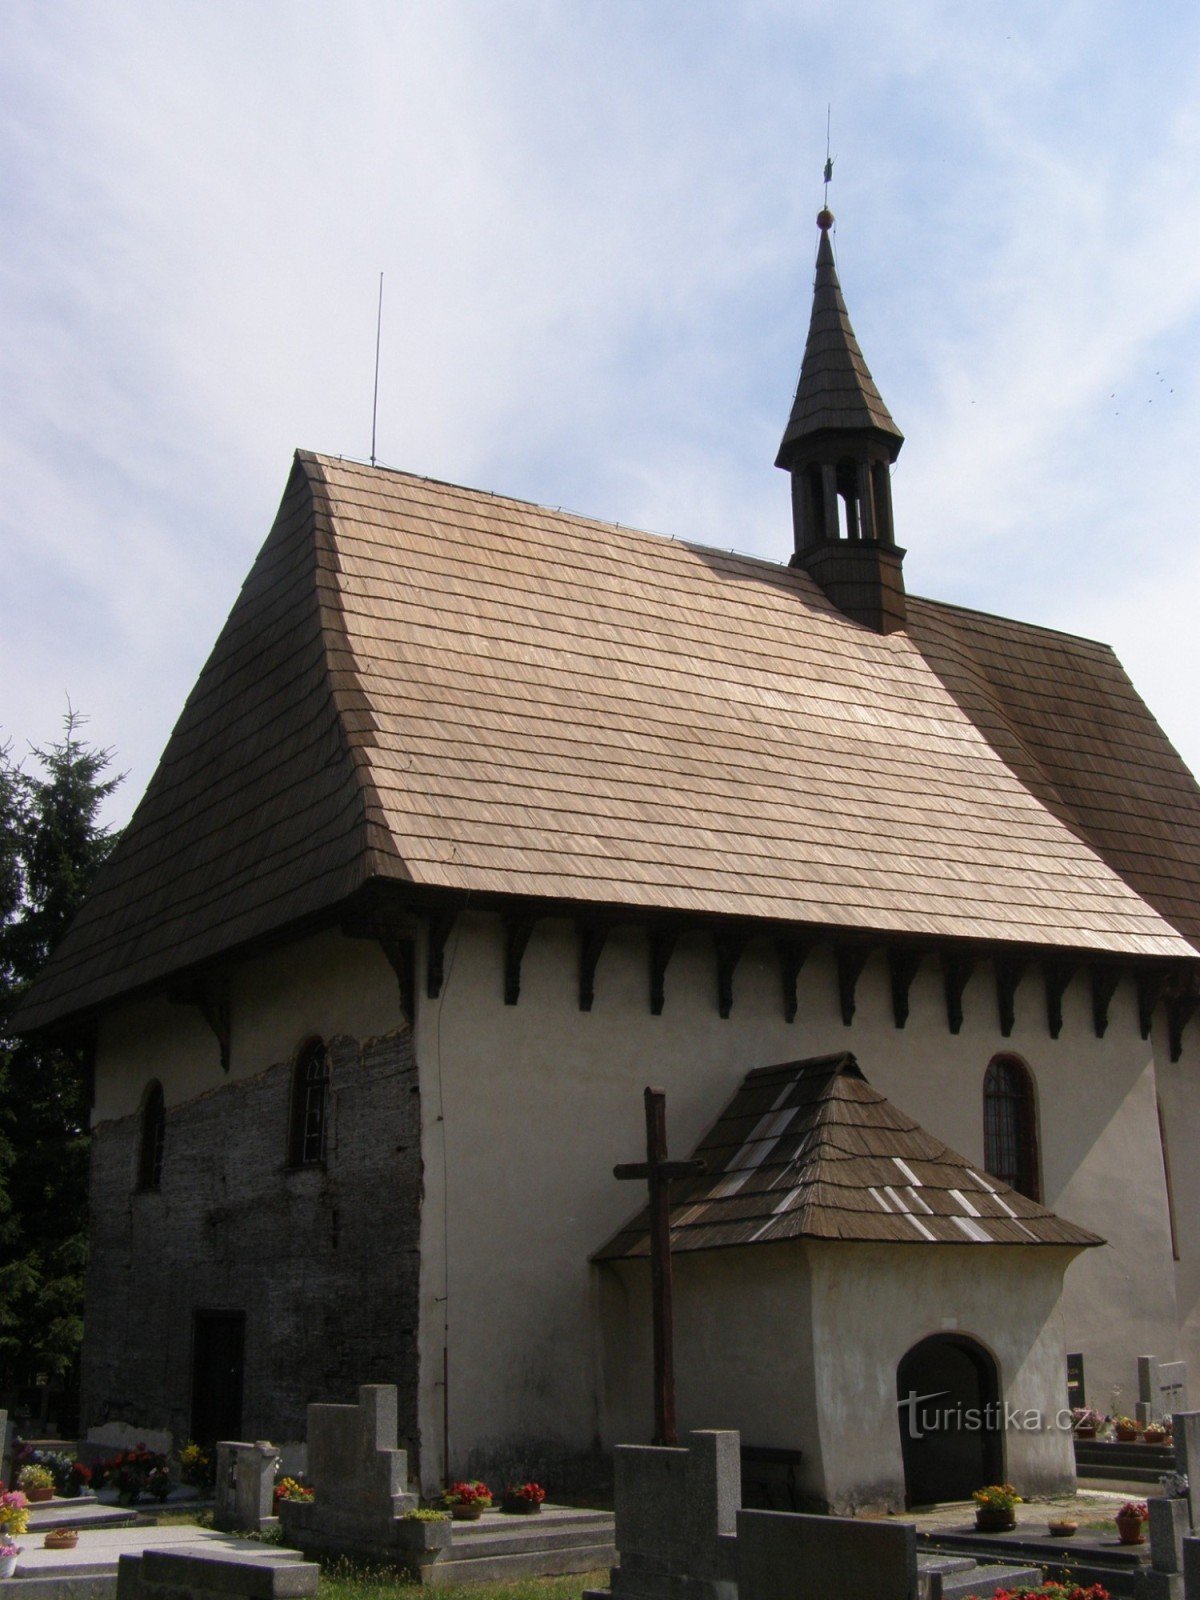 Kozojedy - 木造の教会。 ヴァーツラフ